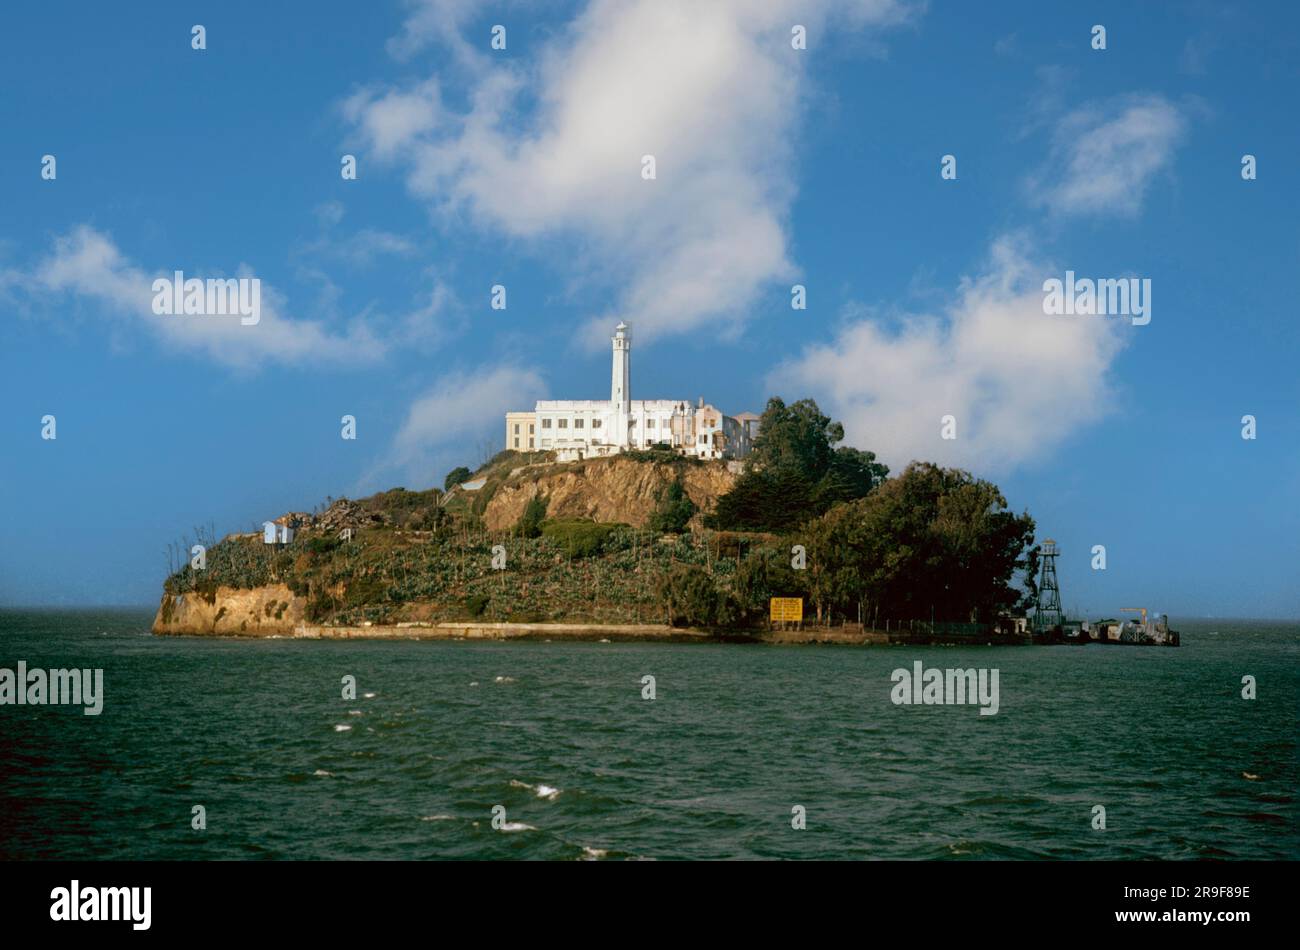 Alcatraz Island and Penitentiary, San Francisco Bay, California Stock Photo